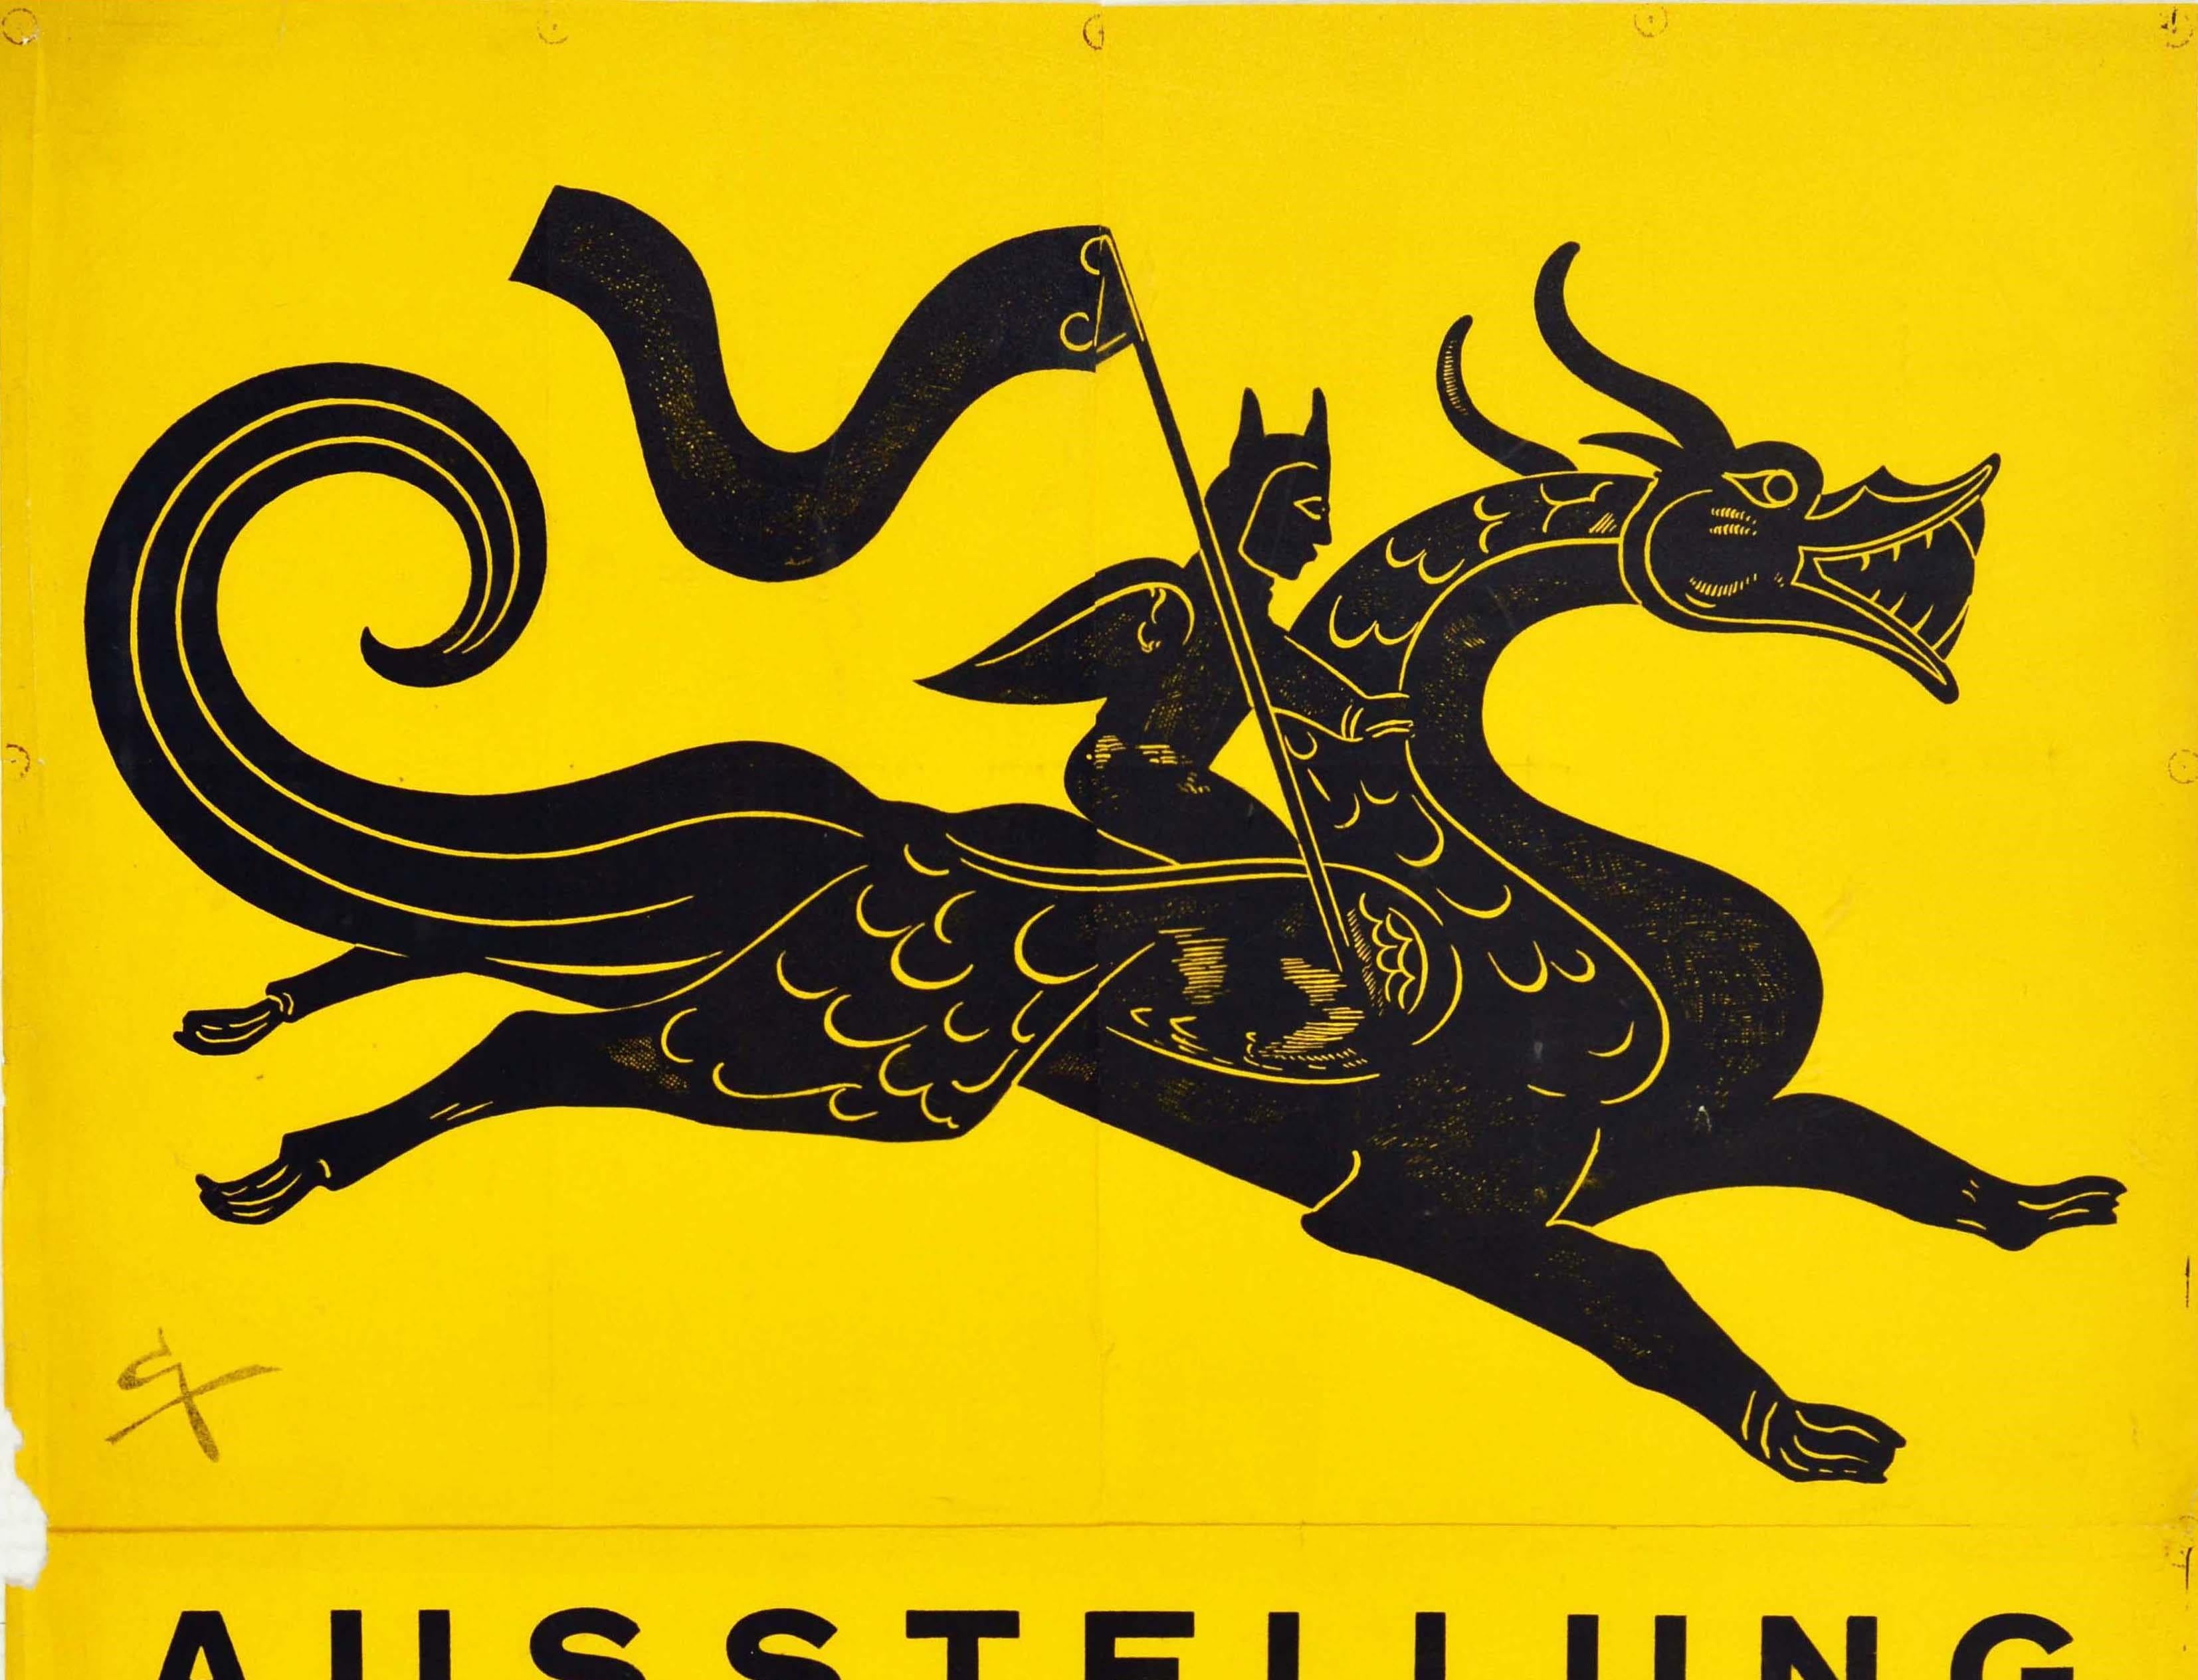 Original Vintage Poster Asian Art Exhibition Asiatische Kunst Koln Dragon Design - Print by Unknown